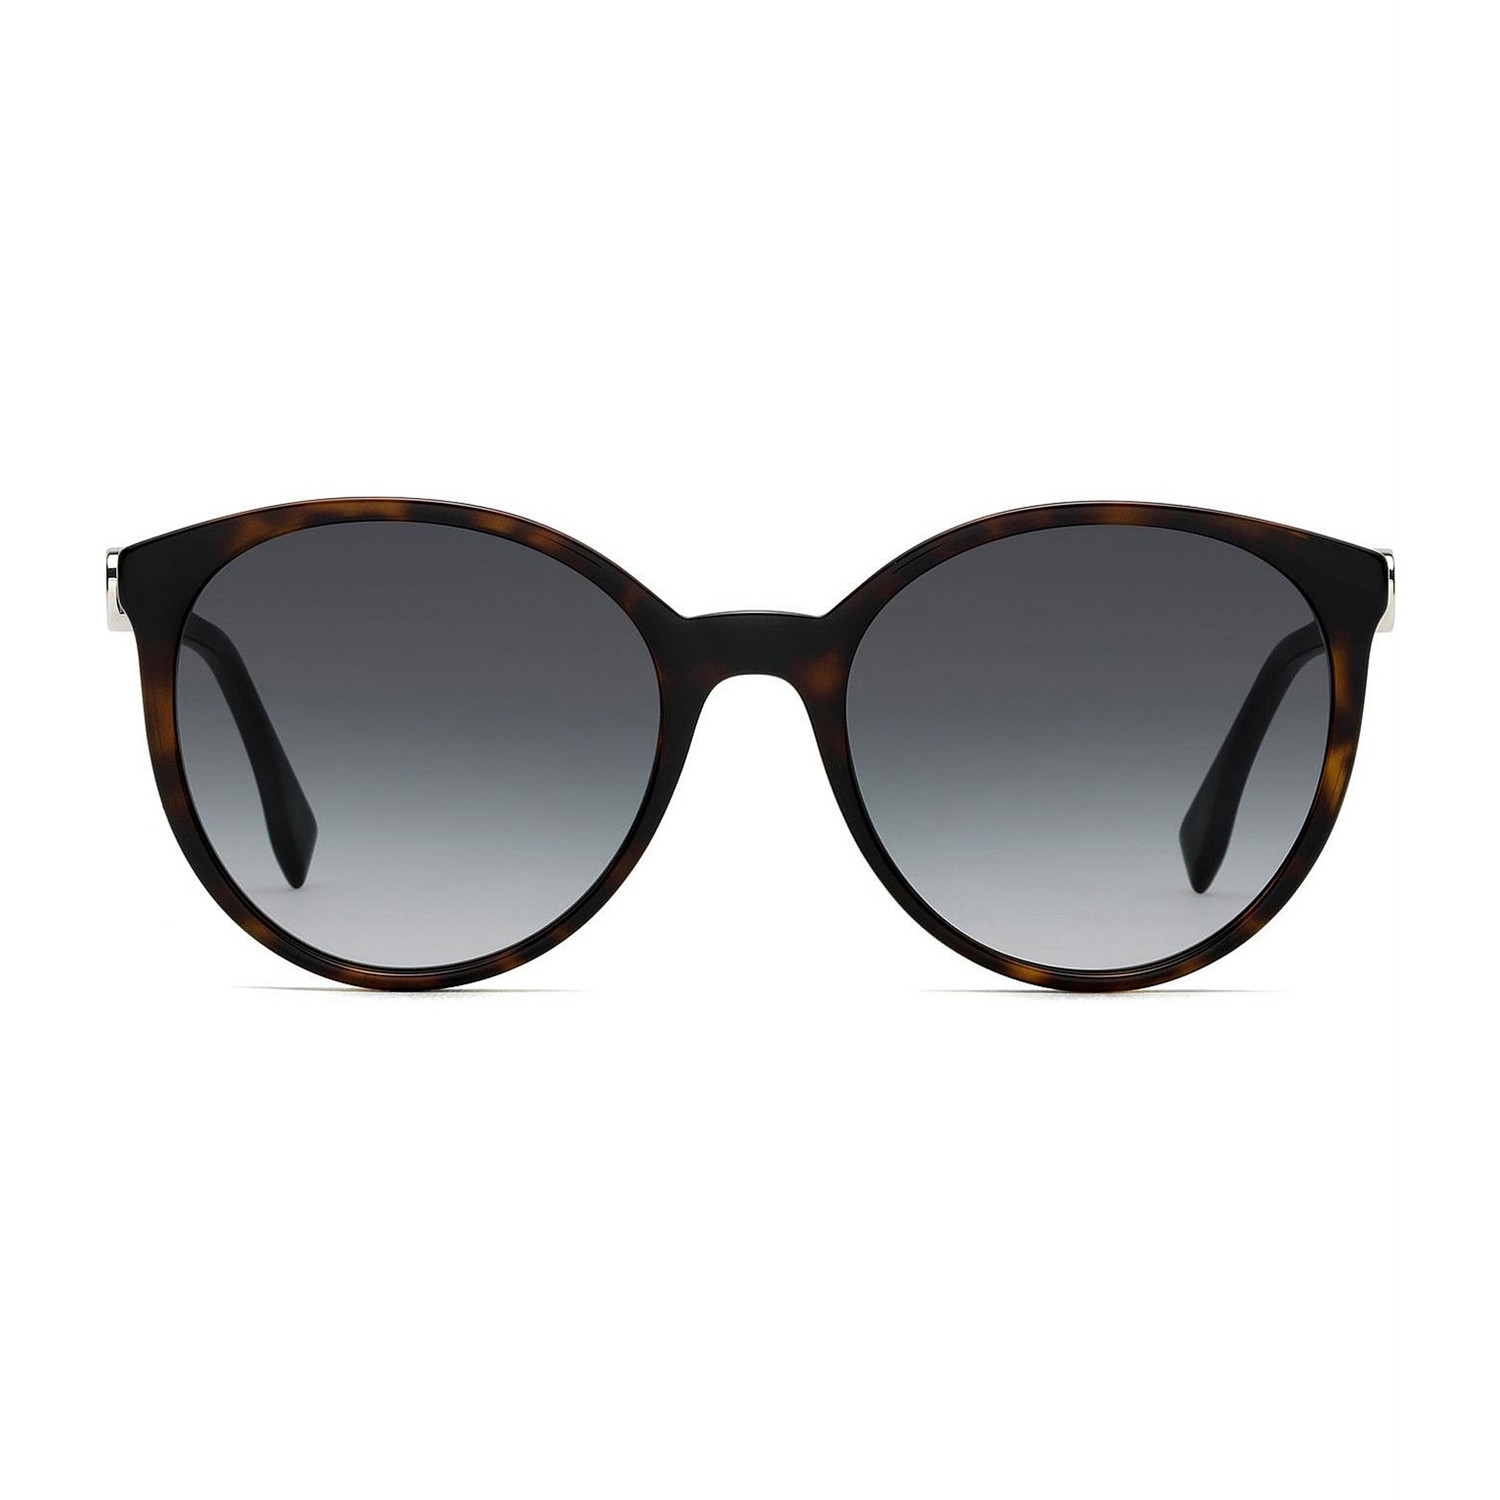 Fendi Womens Sunglasses Dark Havana Dark Gray Gradient Womens Designer Sunglasses 